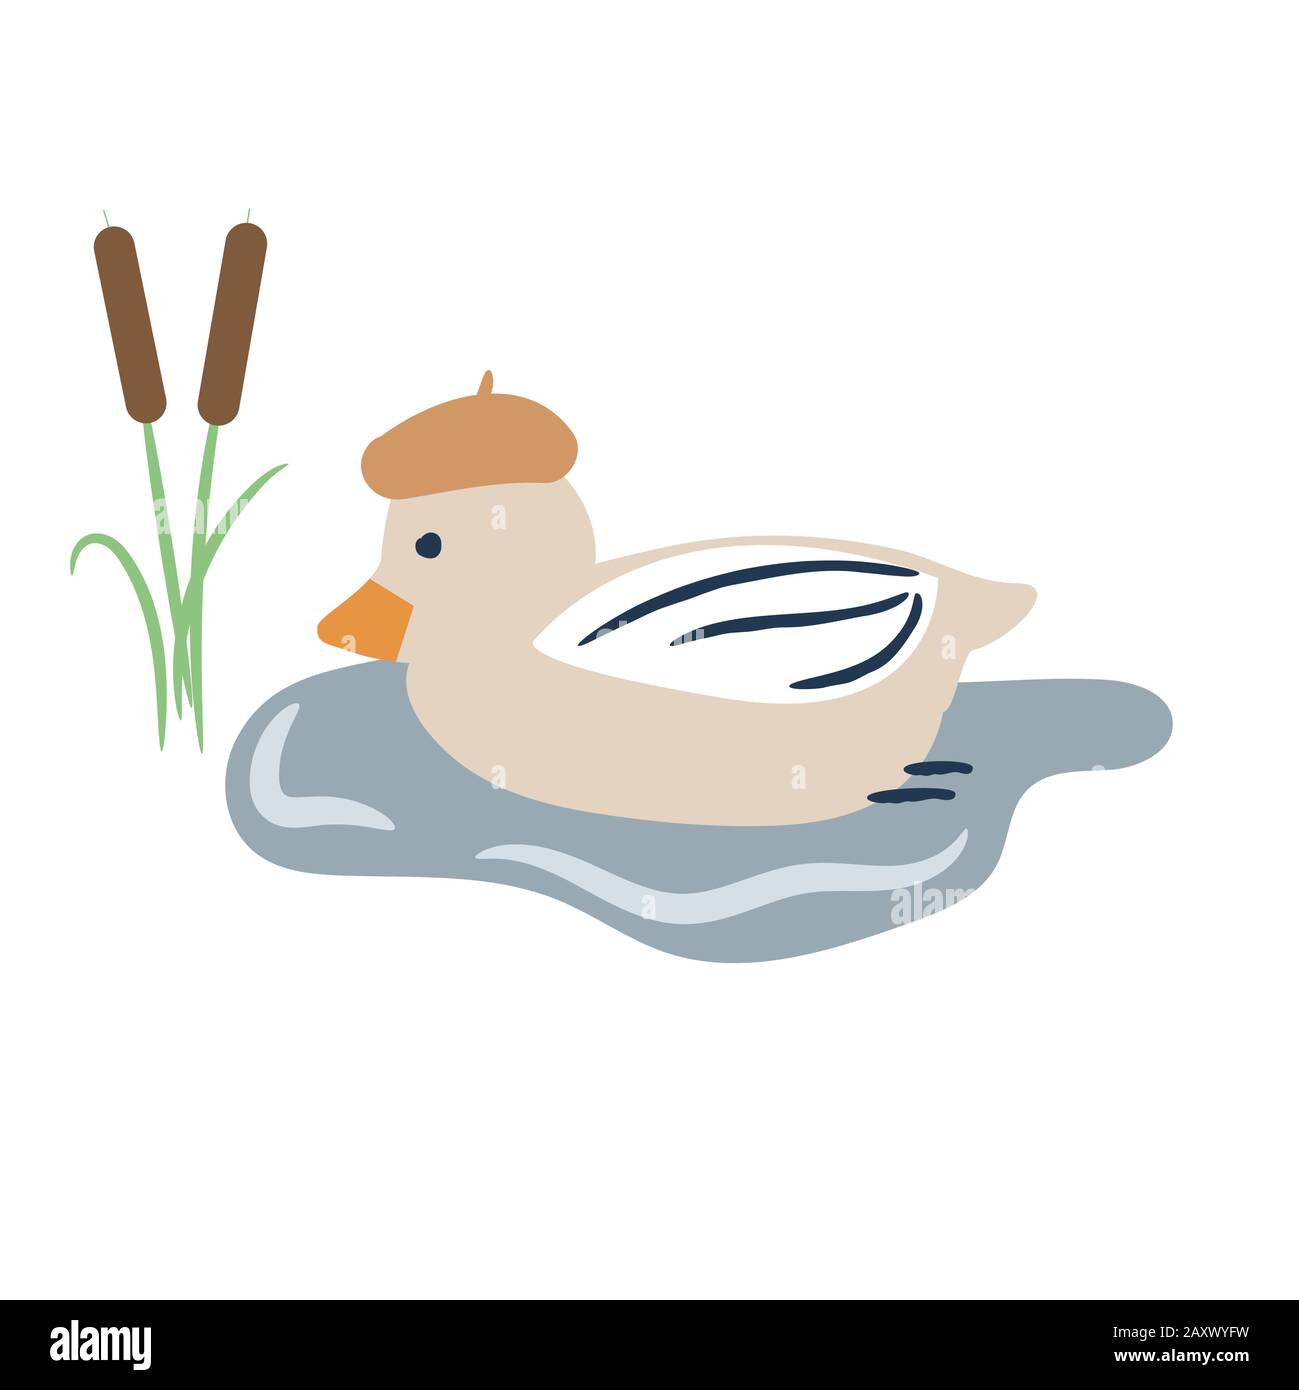 Cute cartoon duck on a pond vector illustration. Stock Vector